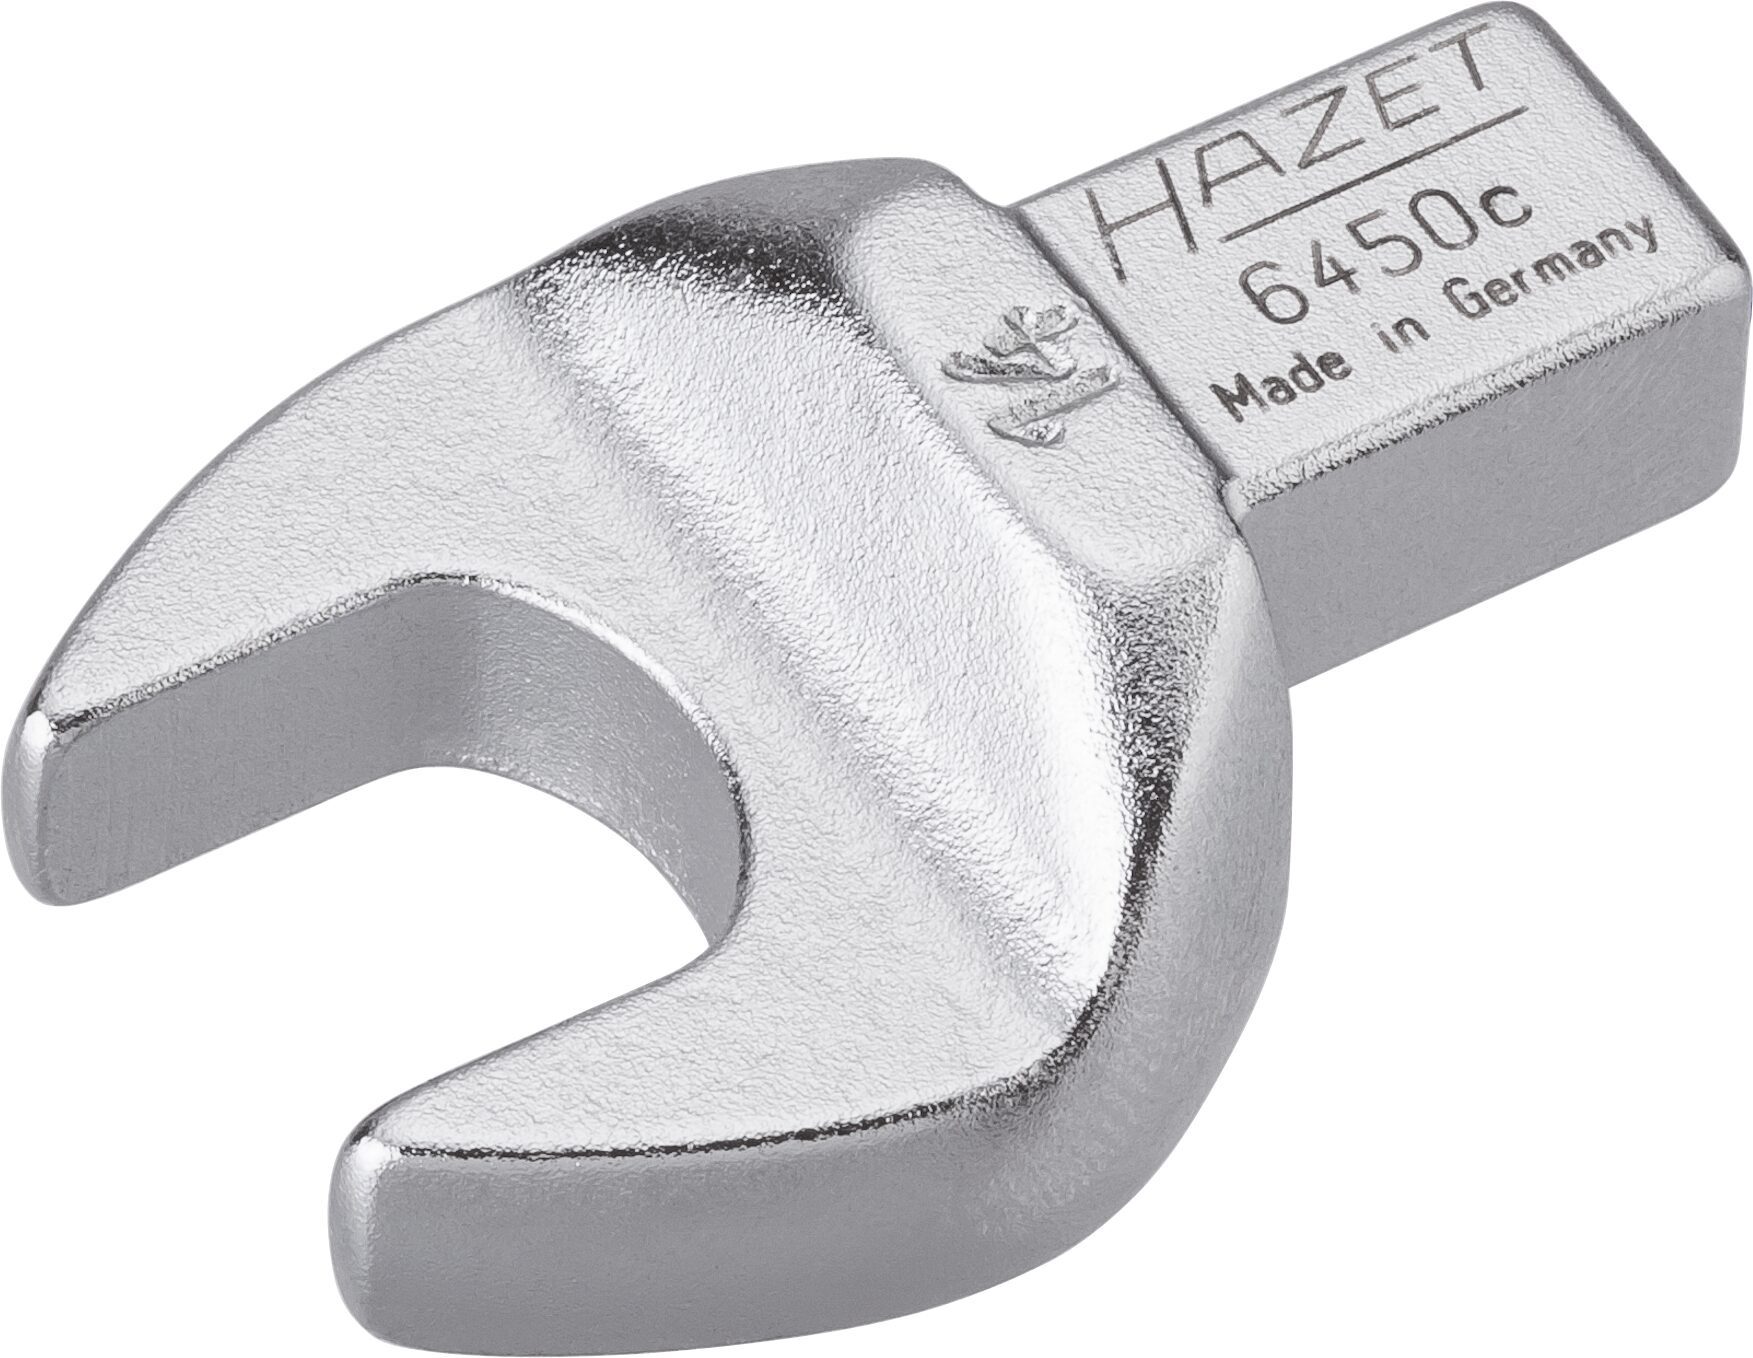 HAZET Einsteck-Maulschlüssel 6450C-14 · Einsteck-Vierkant 9 x 12 mm · Außen Sechskant Profil · 14 mm